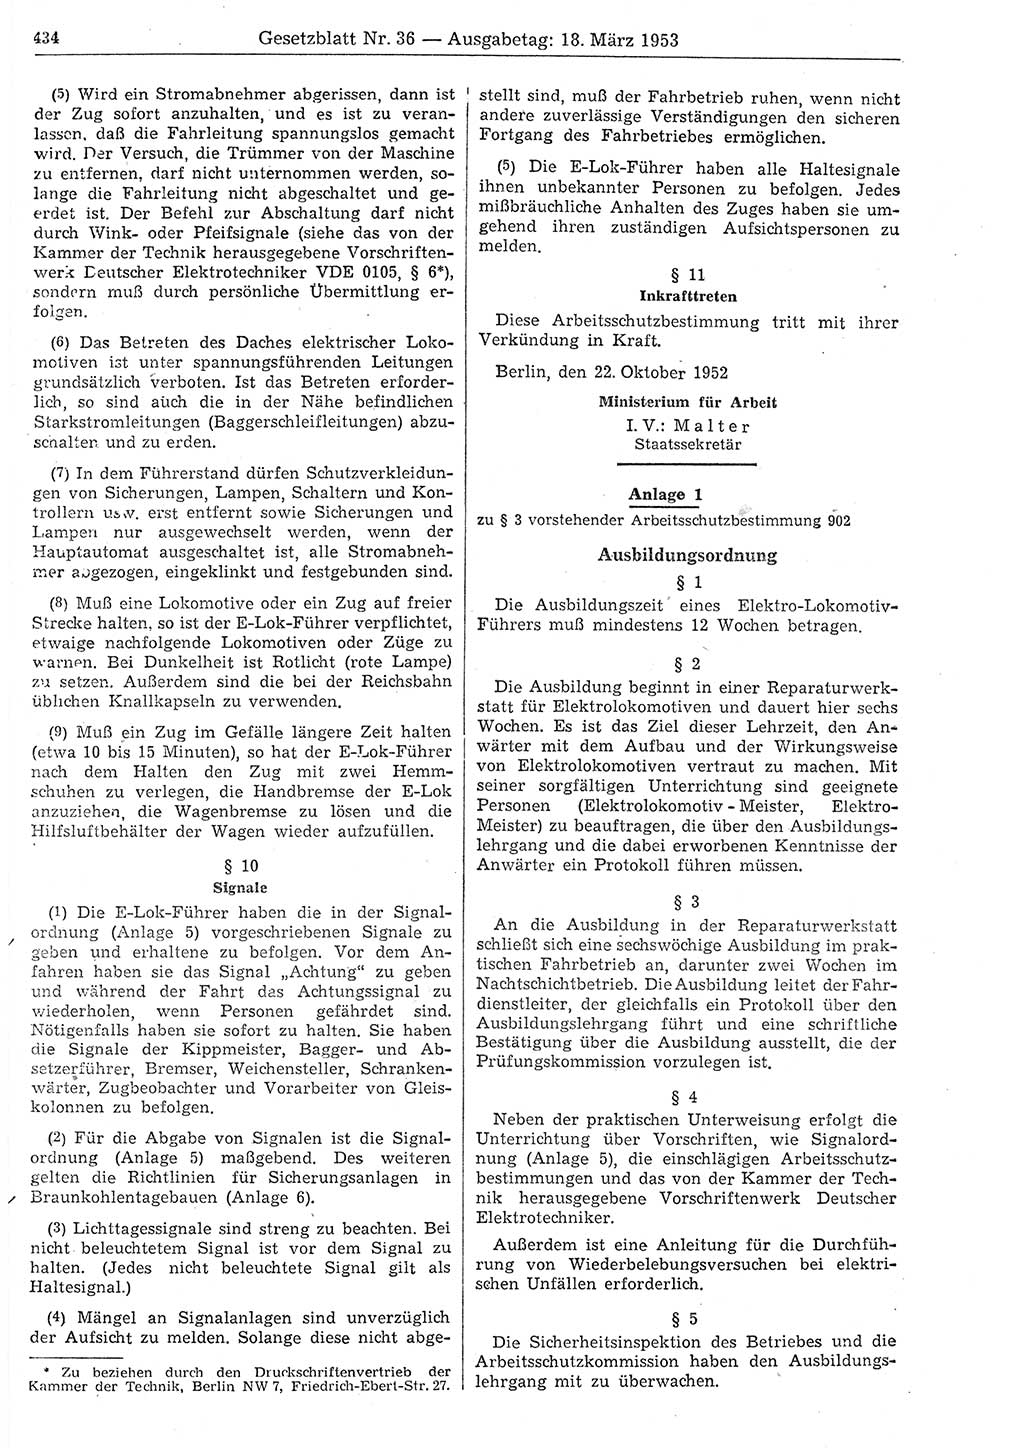 Gesetzblatt (GBl.) der Deutschen Demokratischen Republik (DDR) 1953, Seite 434 (GBl. DDR 1953, S. 434)